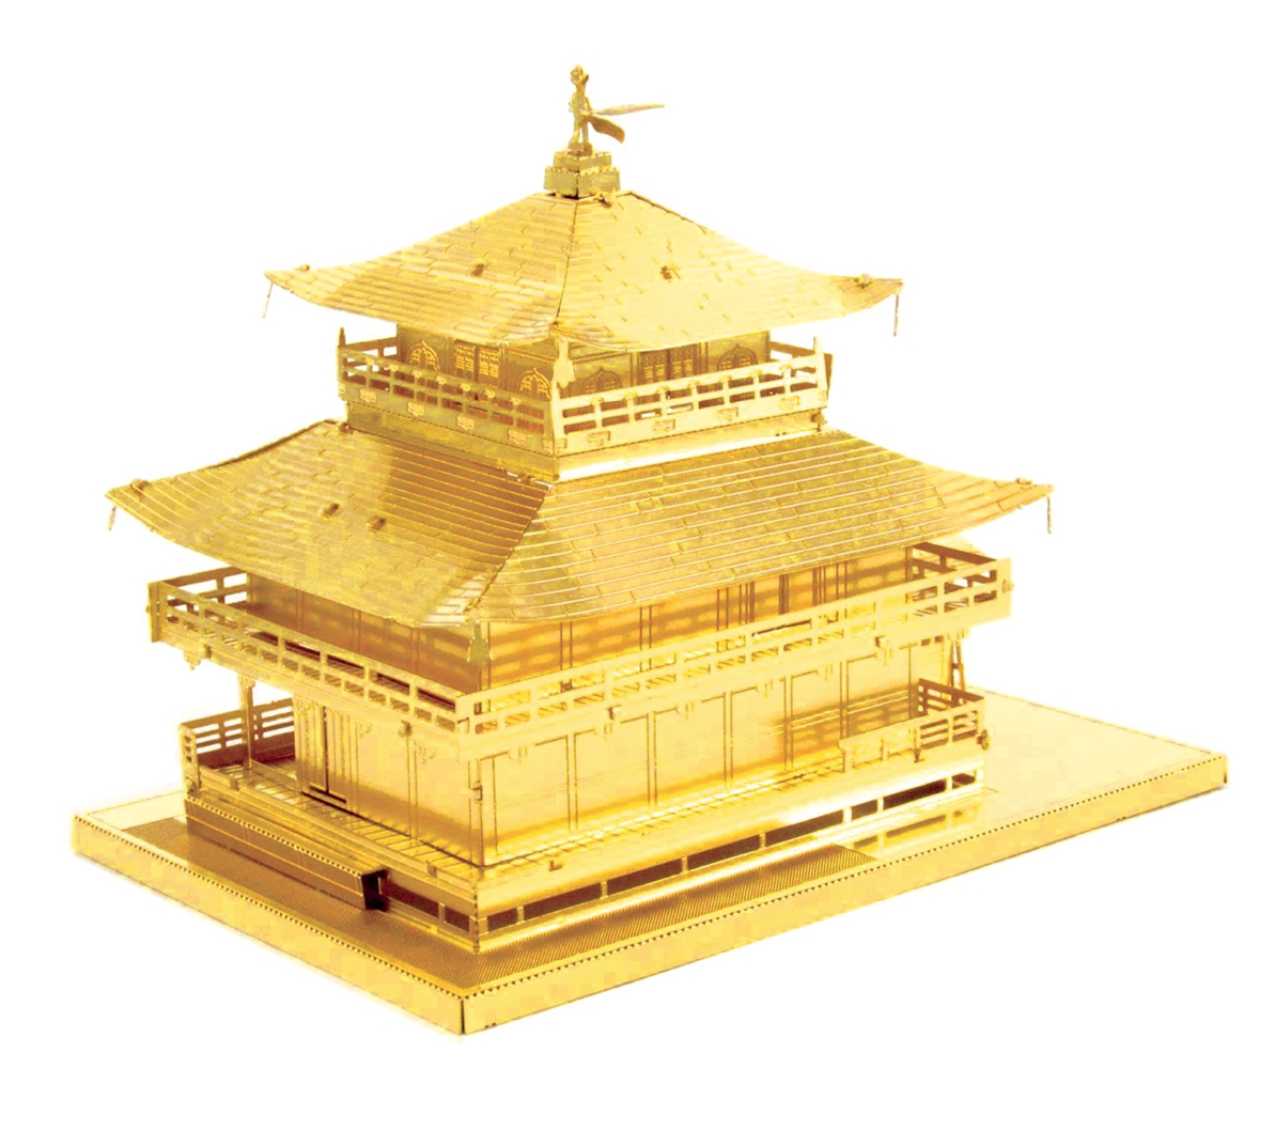 Mini 3d Metal Puzzle Japon Célèbres Bâtiments historiques Kinkaku